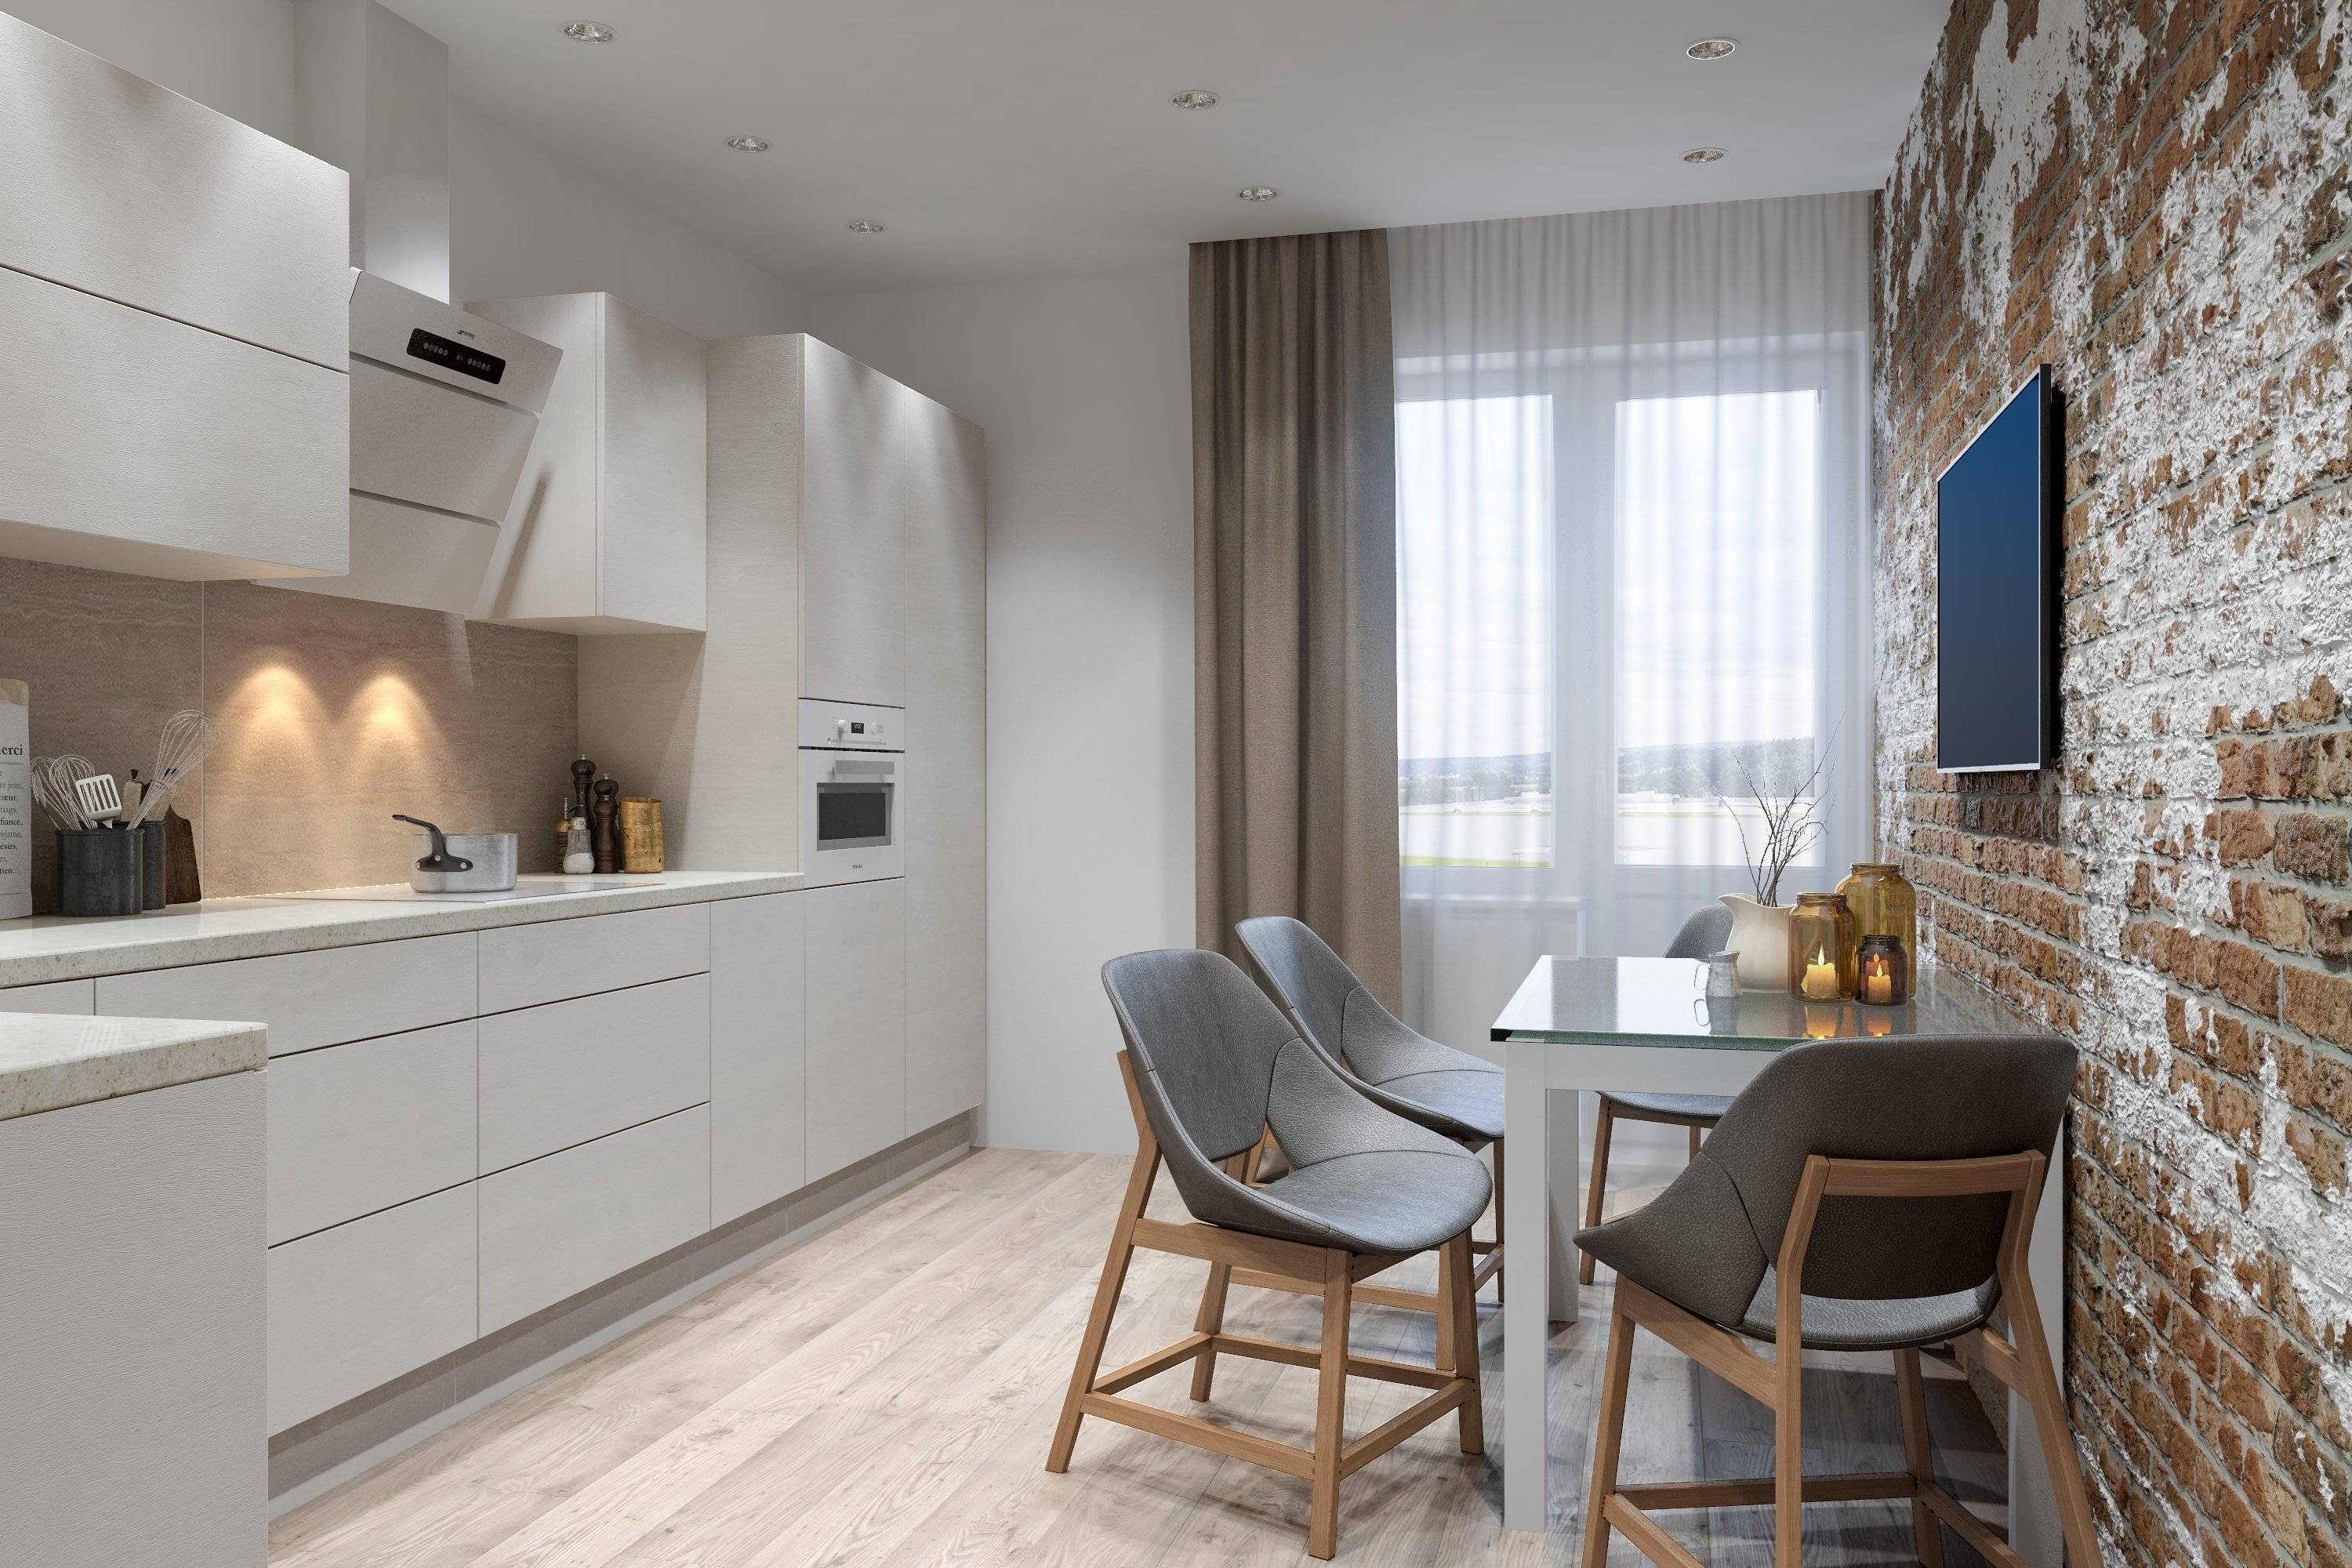 Дизайн кухни 13 кв м: новинки 2020, планировка и дизайн с диваном, кухня 13 кв м с выходом на балкон